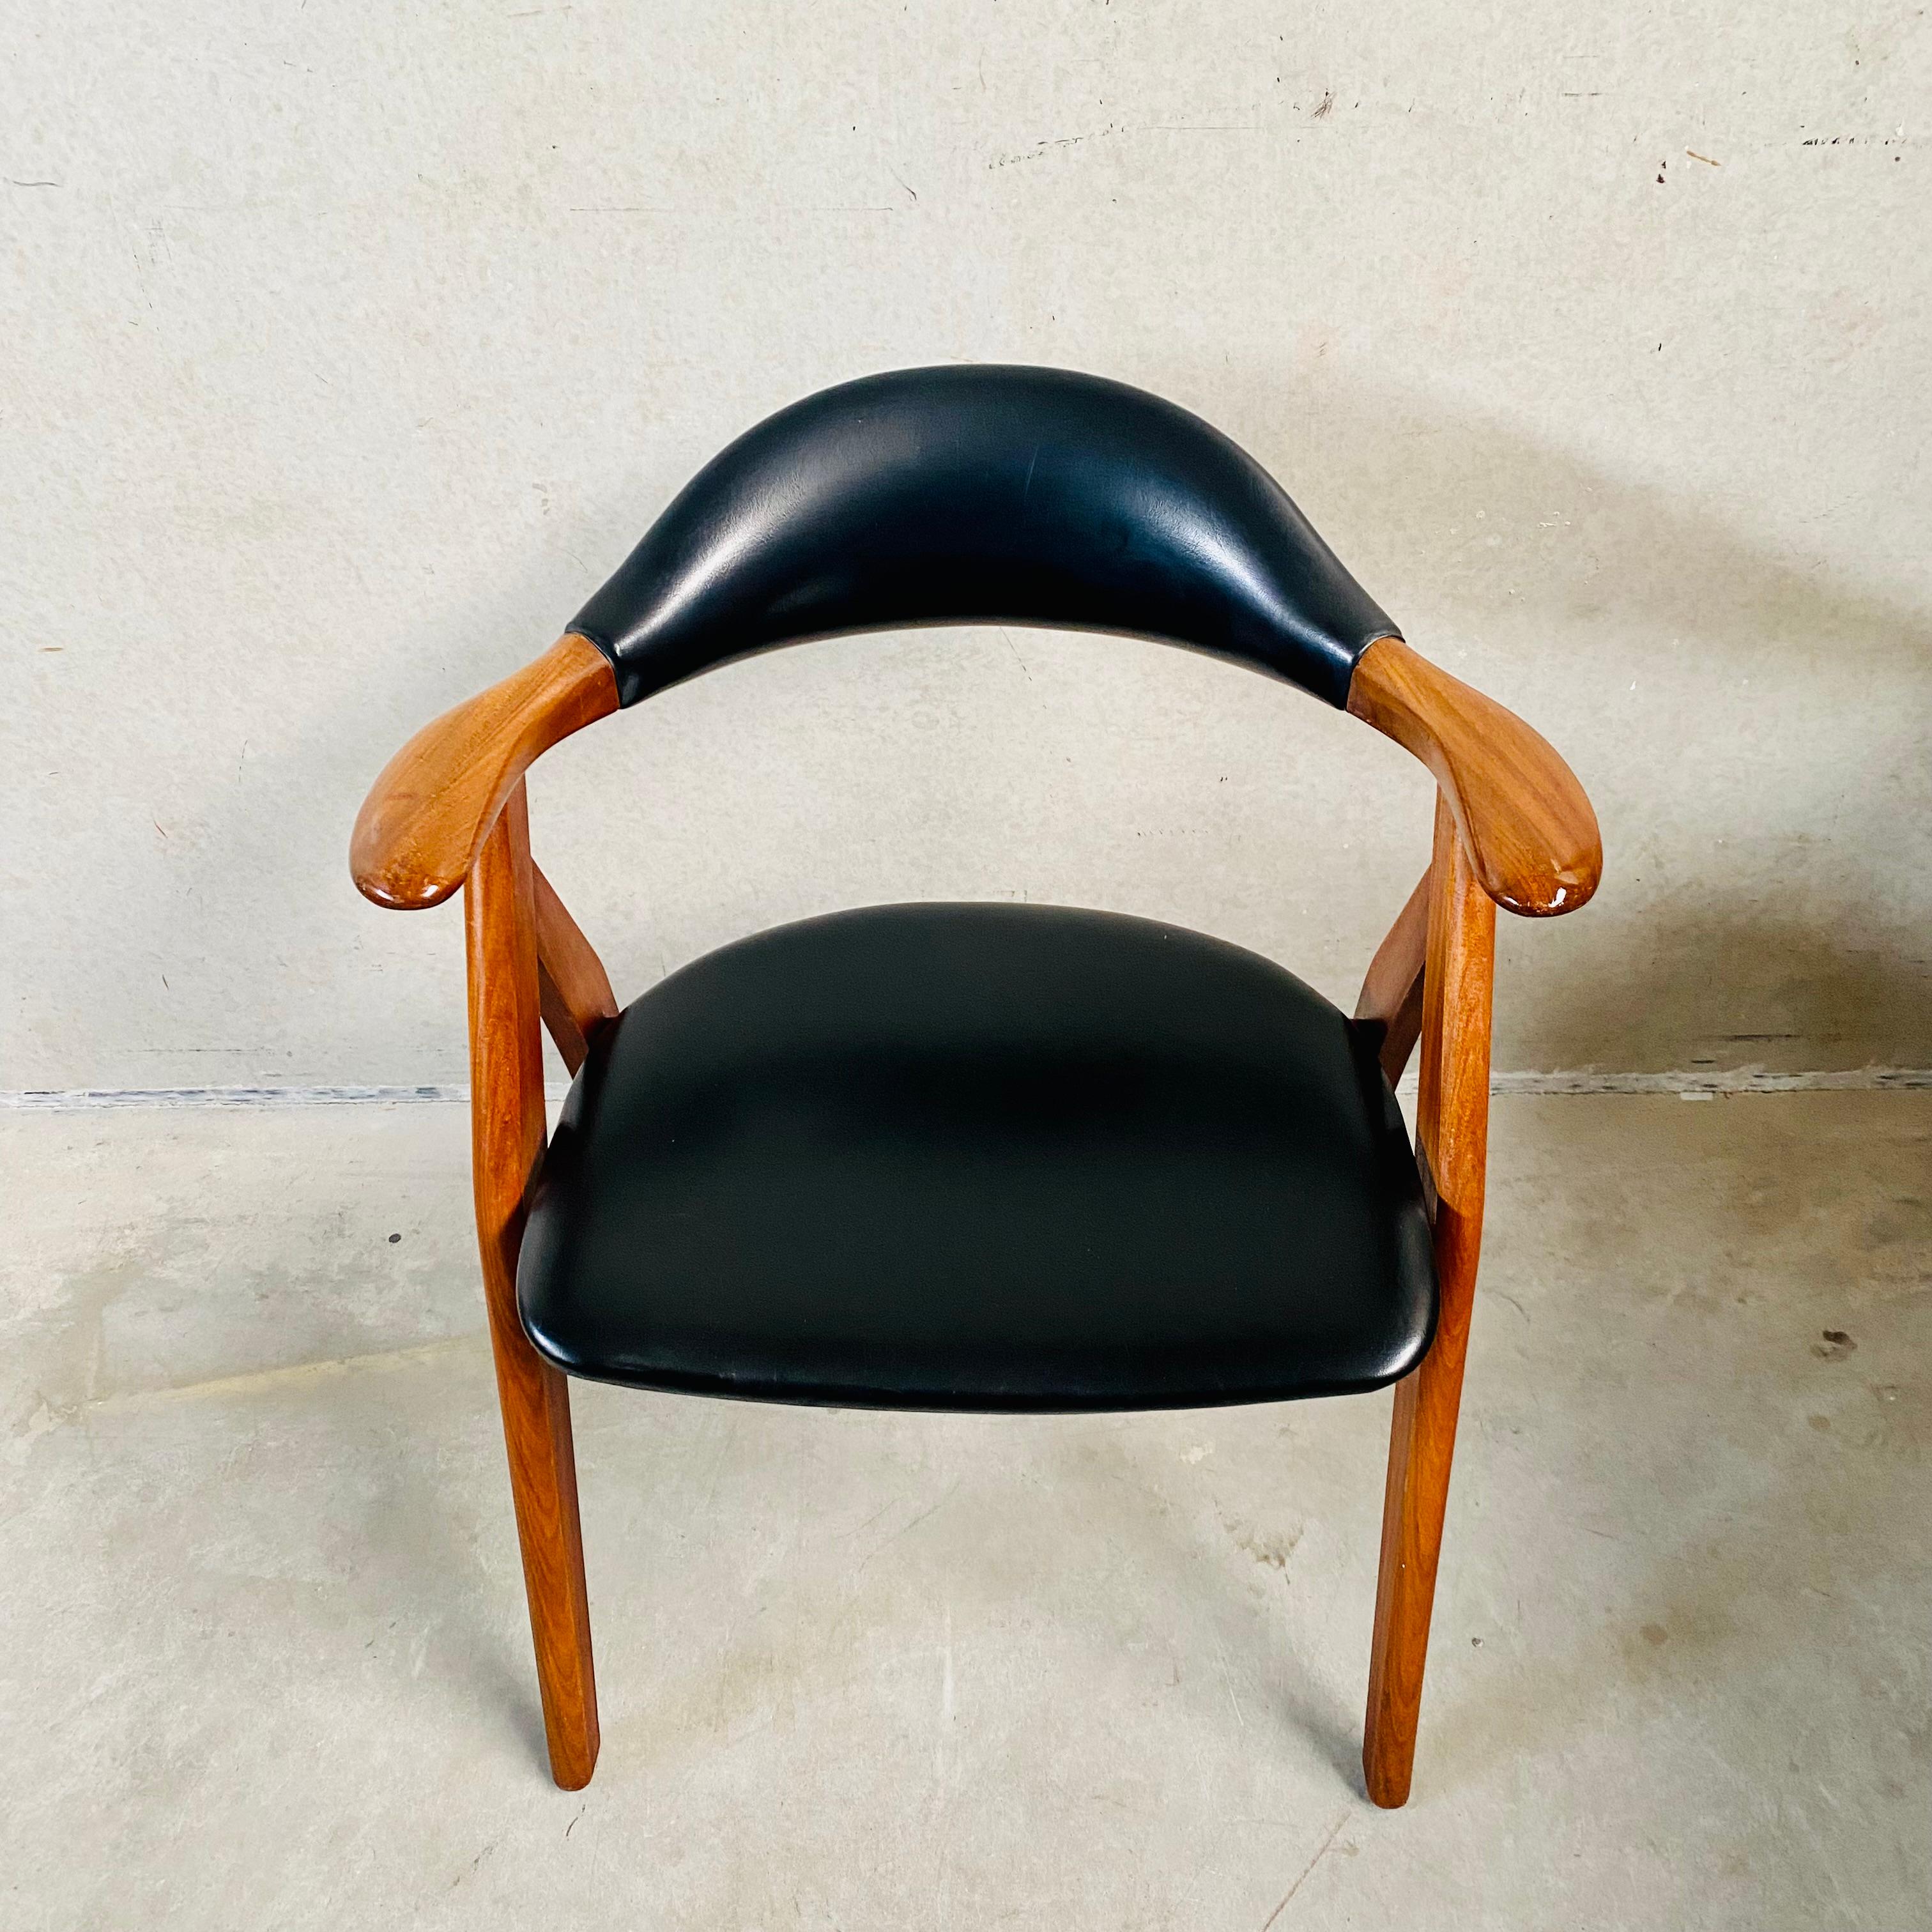 Cow Horn Chair von Tijsseling Meubelfabriek, Niederlande 1960 (Handgefertigt)